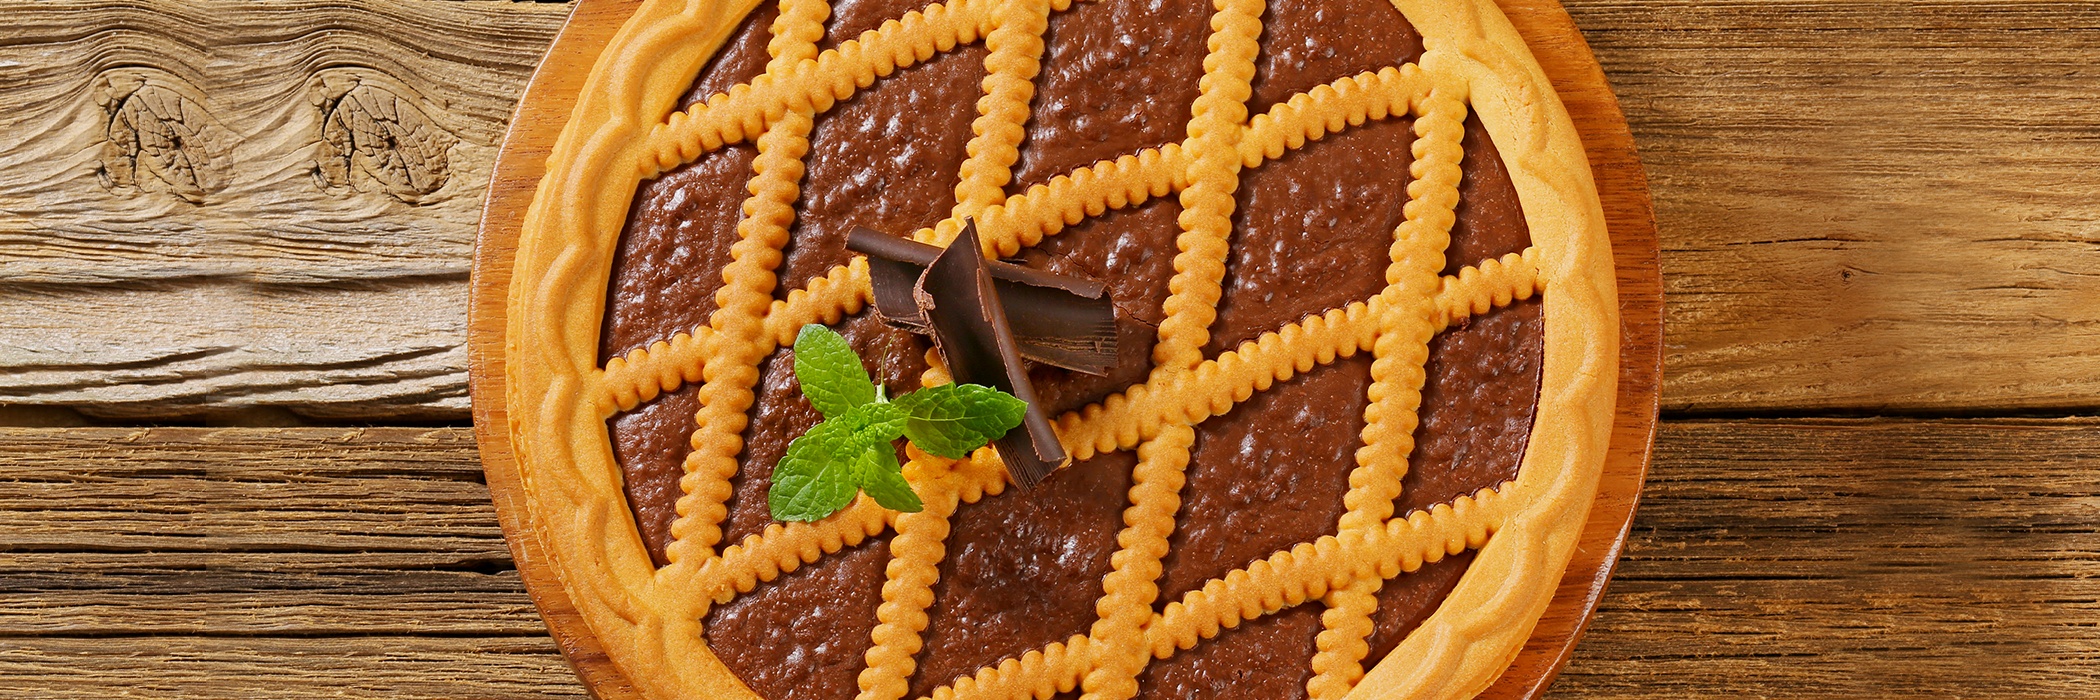 crostata al cioccolato